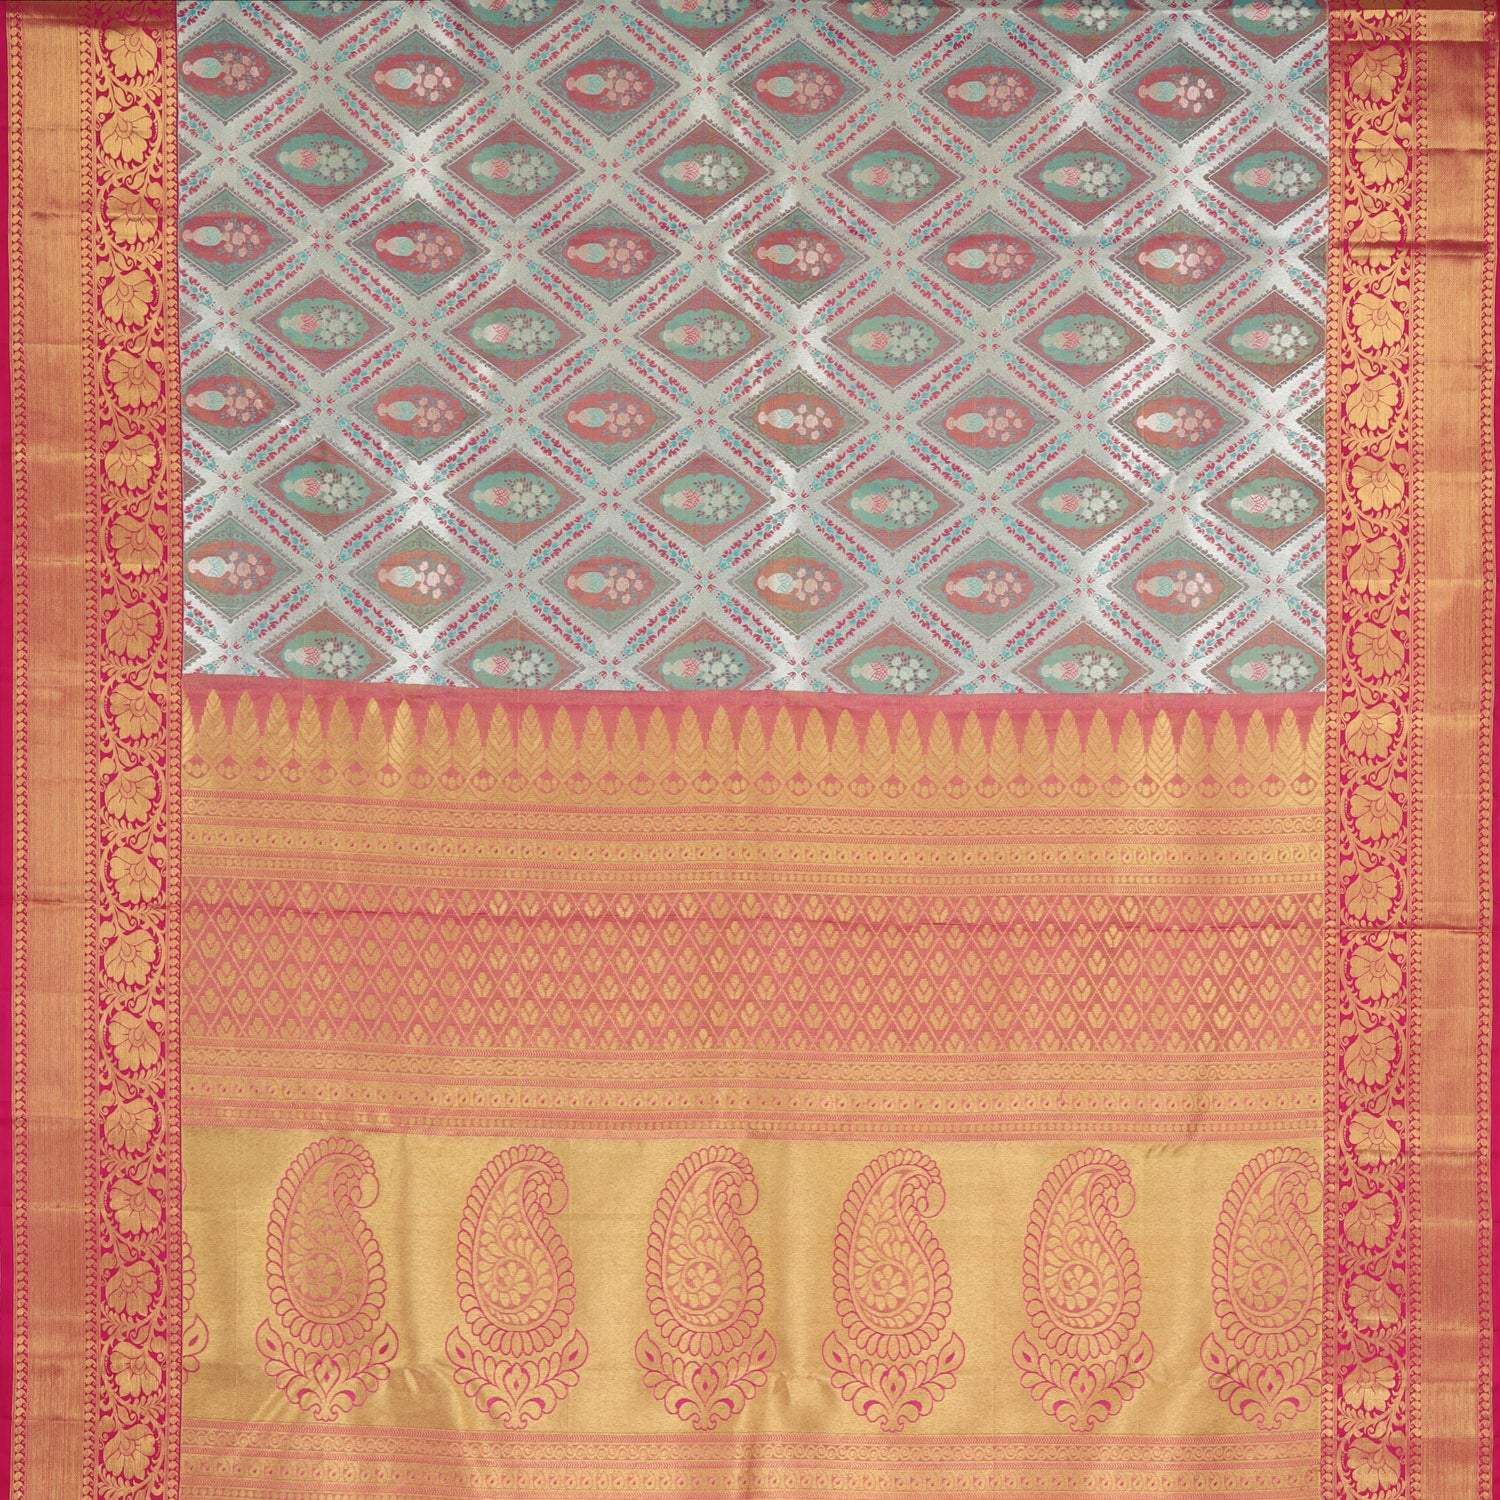 Cloud White Kanjivaram Silk Saree With Floral Motif Pattern - Singhania's